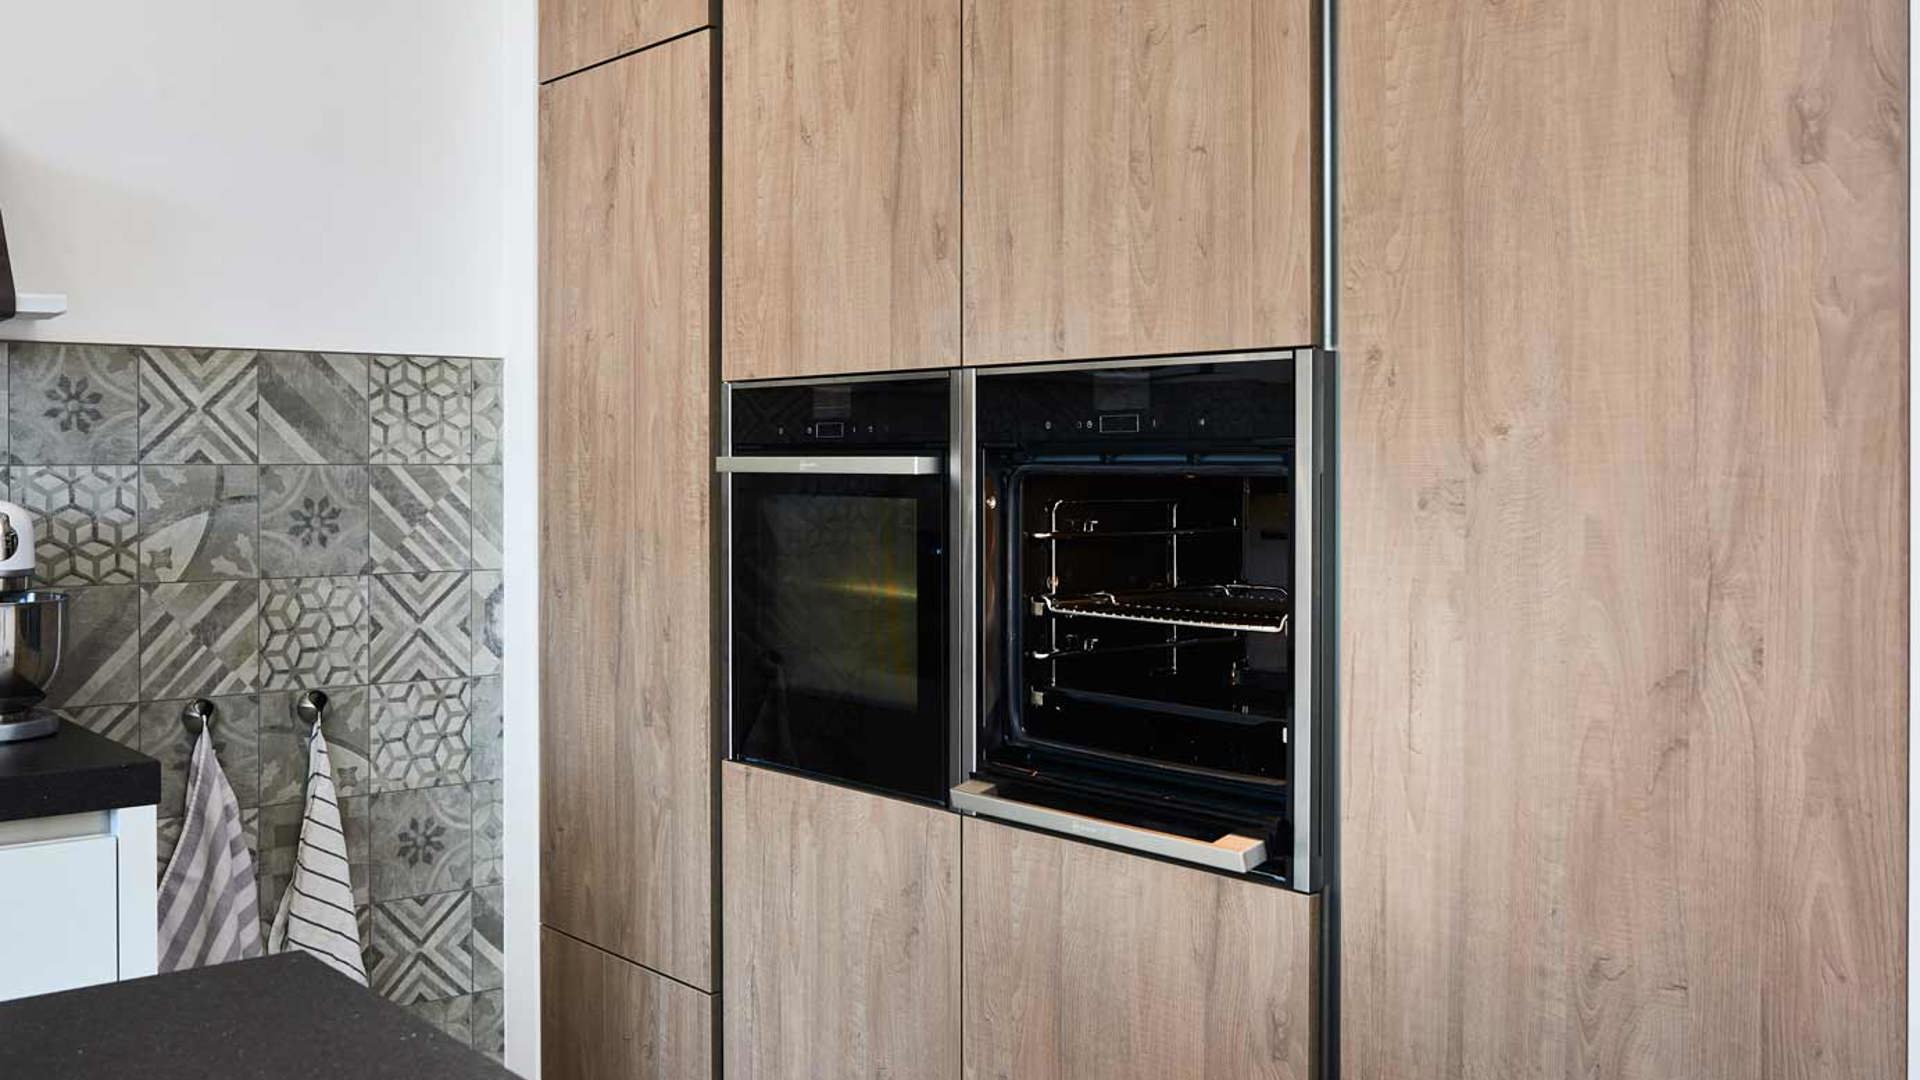  Moderne keuken met eiland, oven met slider deur